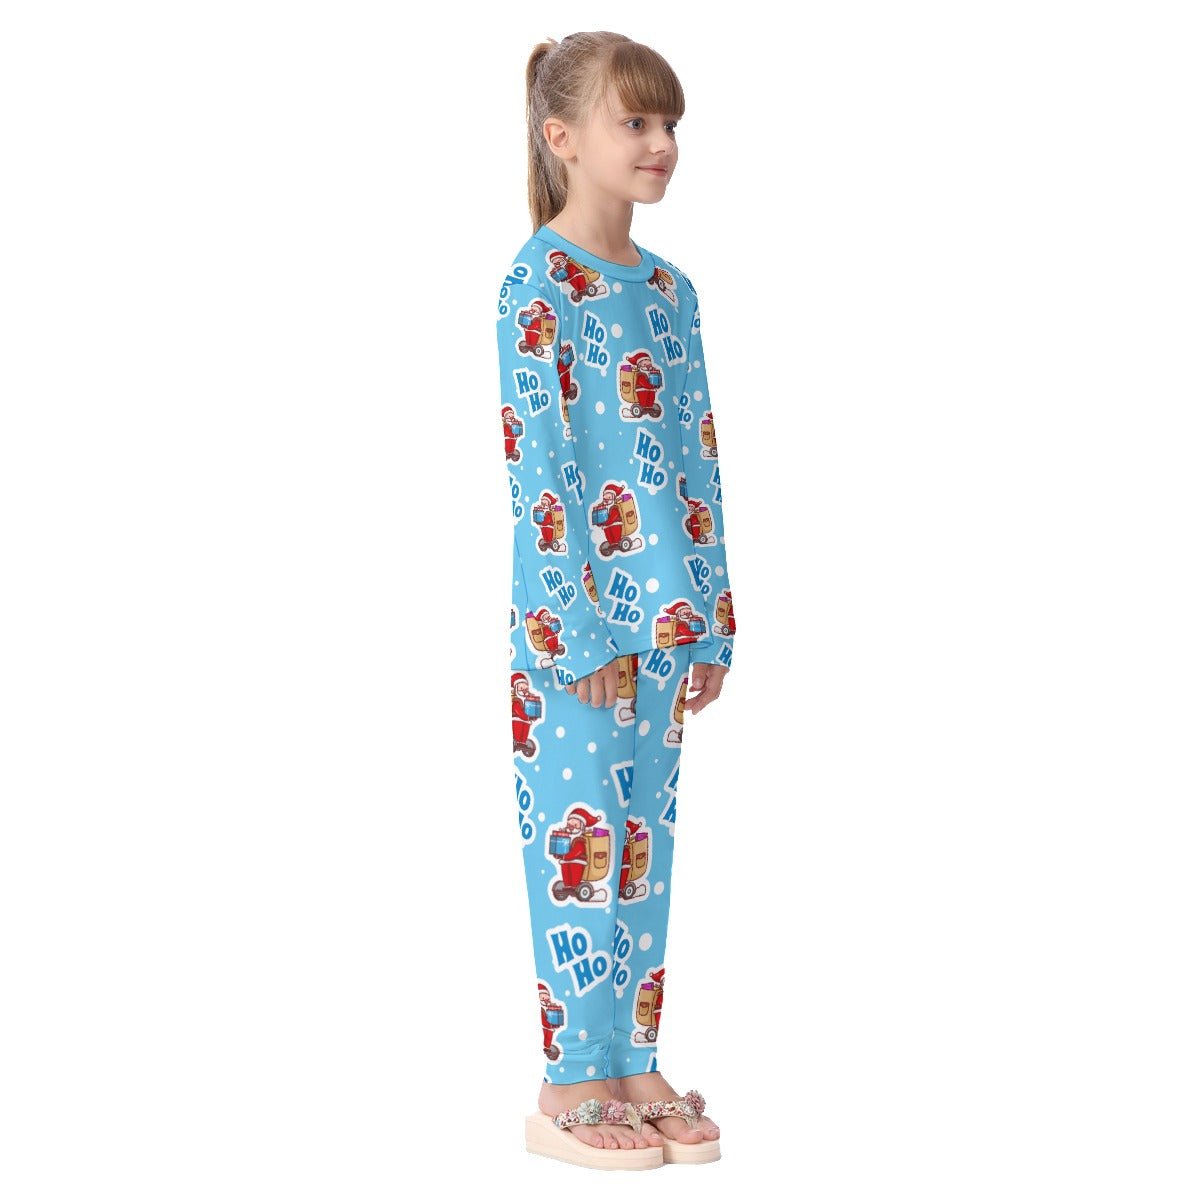 Kids Christmas Pyjama Set - Light Blue "Ho Ho" - Festive Style